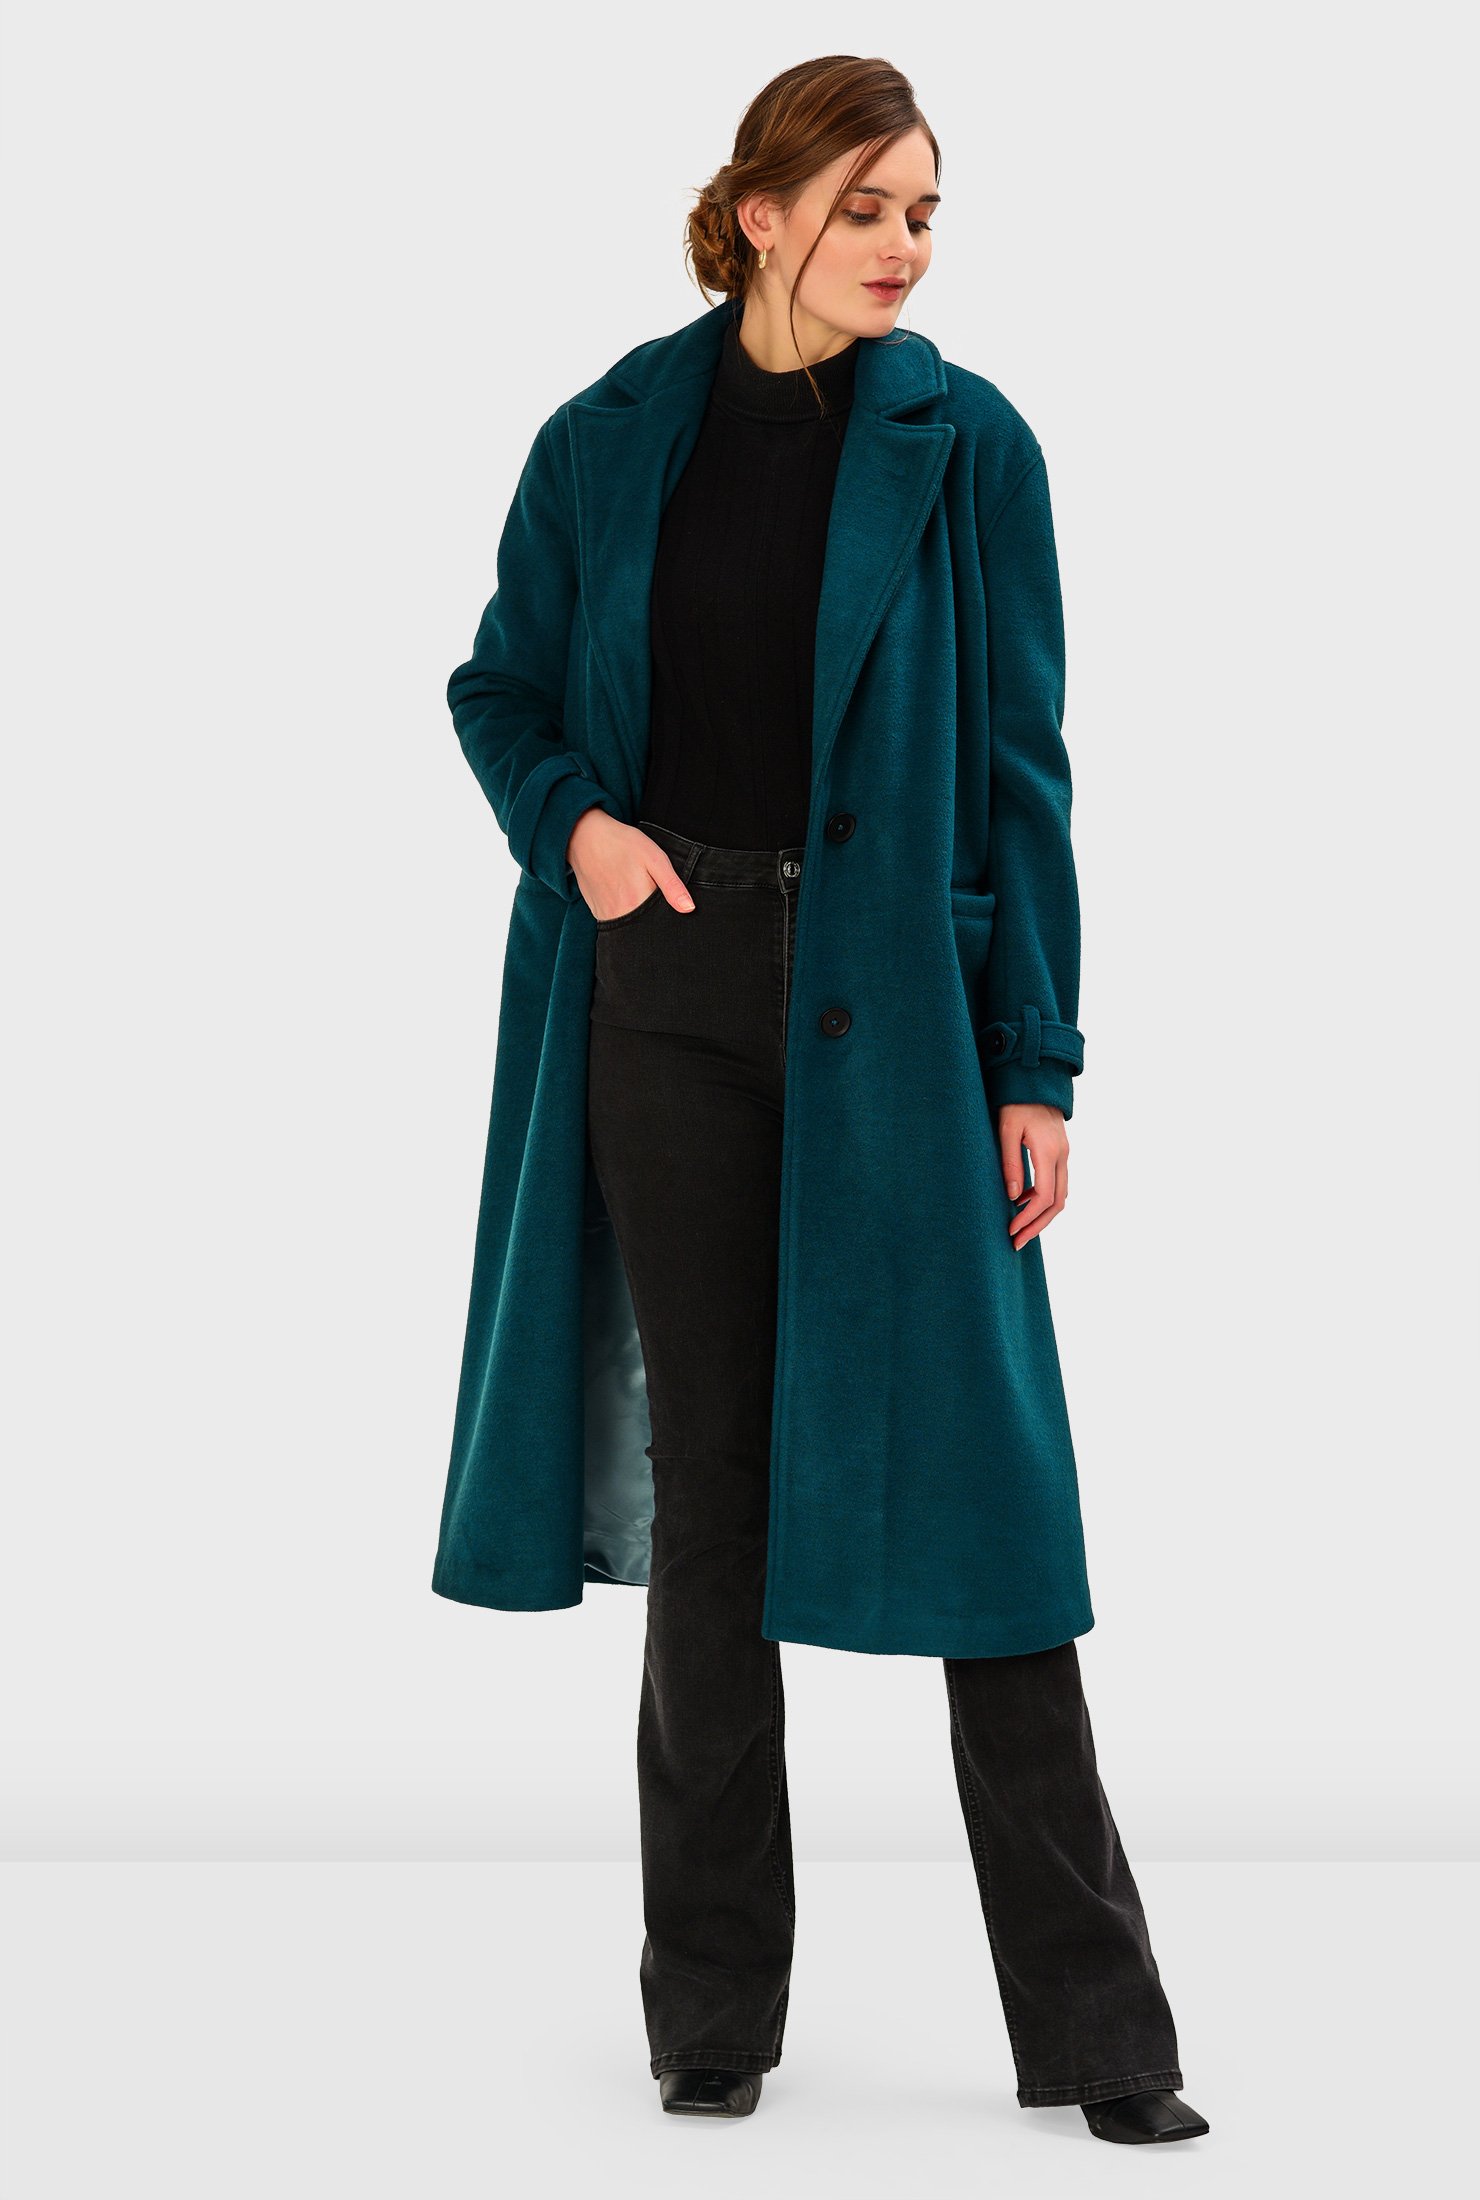 Melton-look wool blend long coat